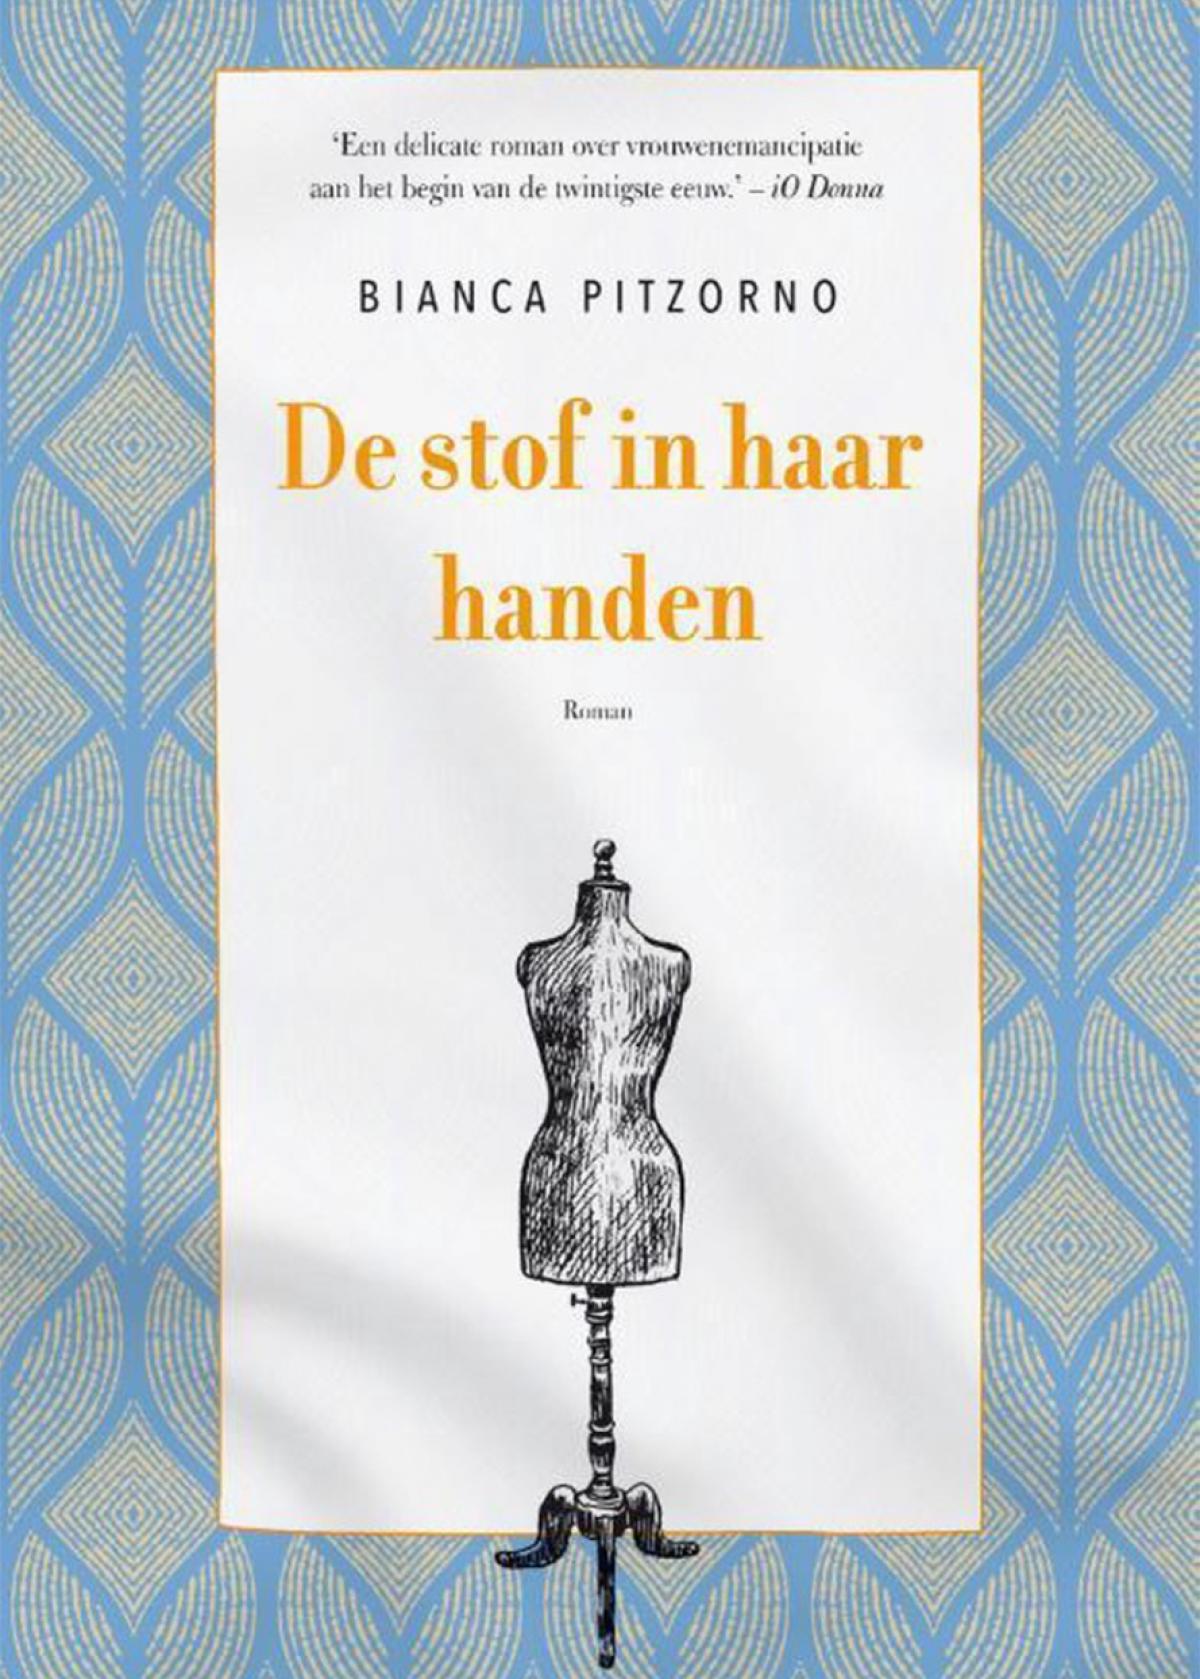 De stof in haar handen - Bianca Pitzorno